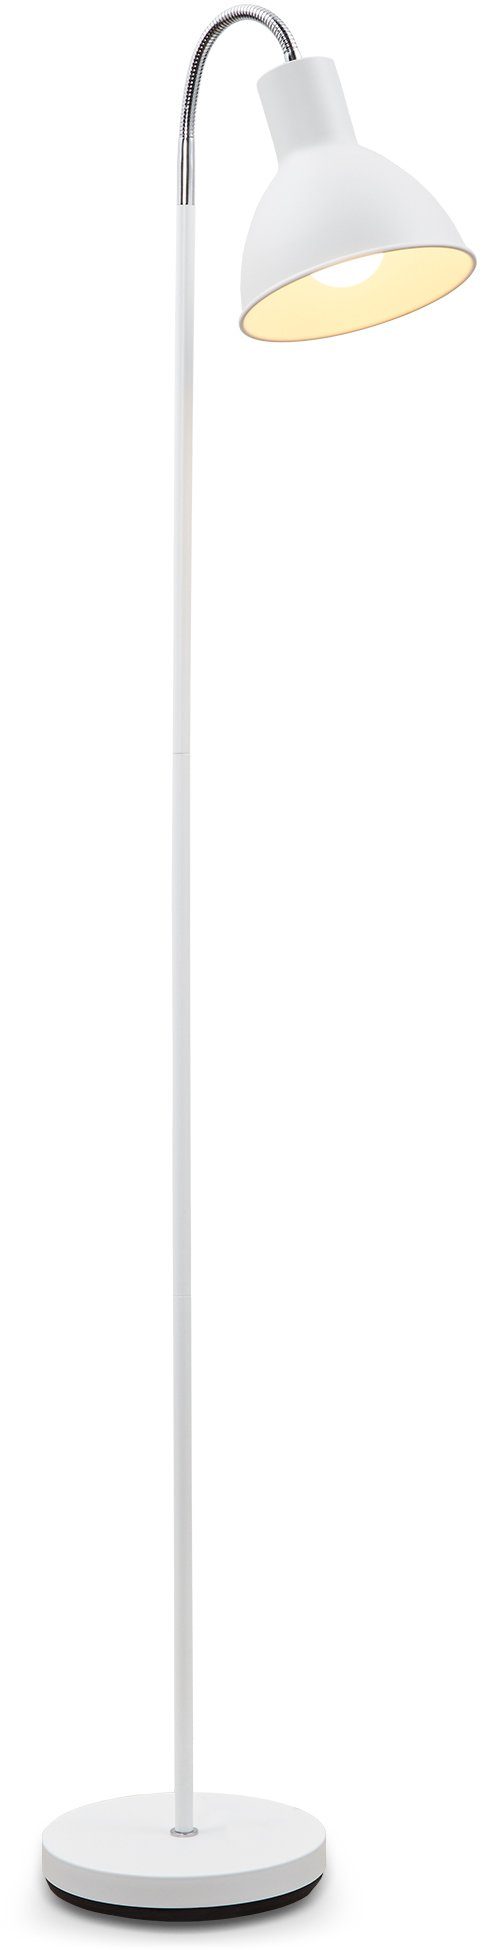 Stehleuchte Design Stand-Leuchte LED schwenkbar E27 Industrial B.K.Licht ohne Warmweiß, Leuchtmittel, Metall Stehlampe, weiß